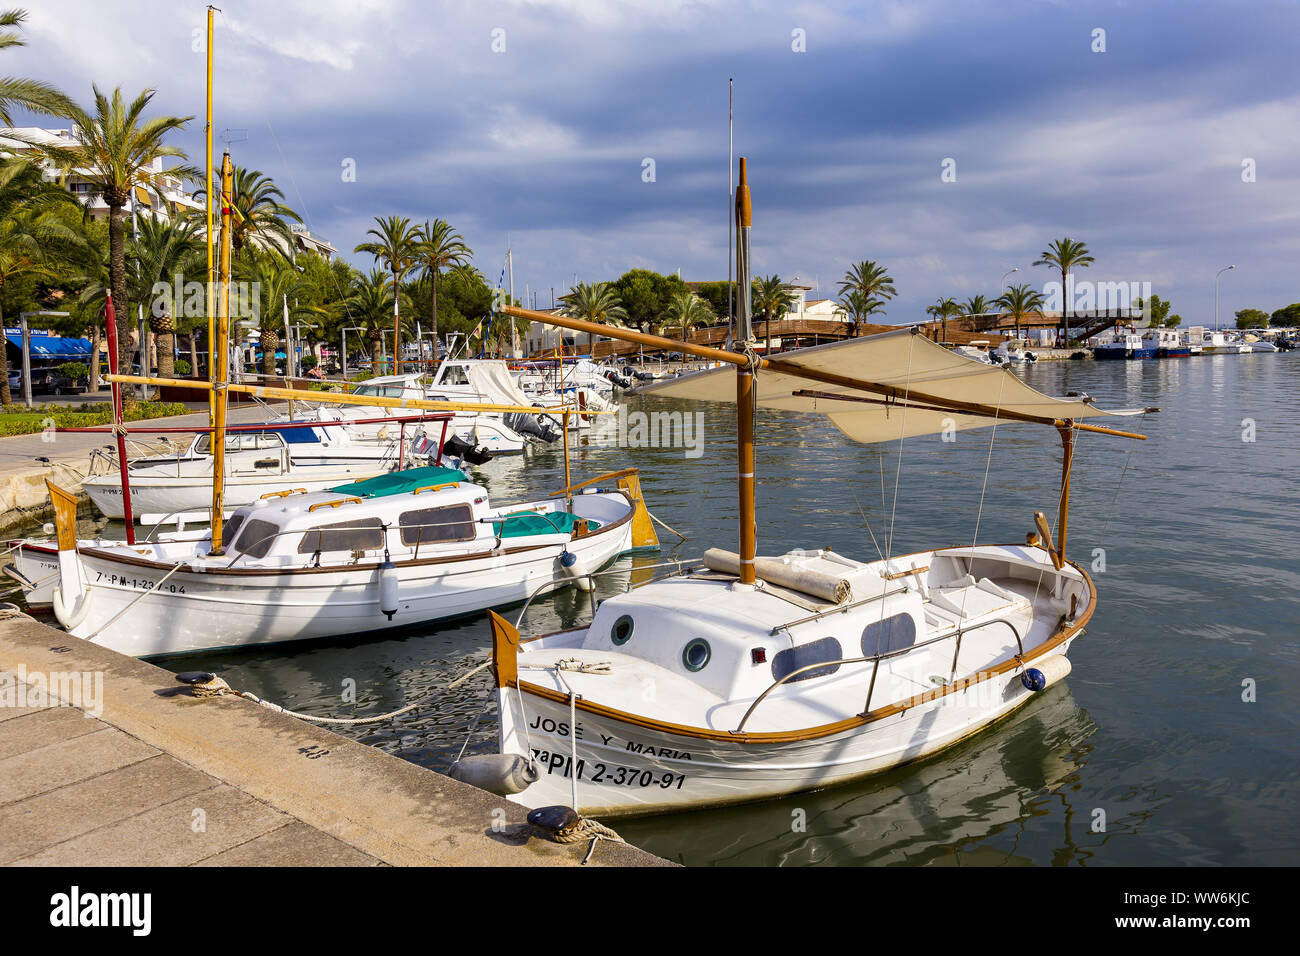 Barcos en el Puerto de Alcudia, al norte de la costa de la isla de Mallorca, Mediterráneo, España, sur de Europa Foto de stock